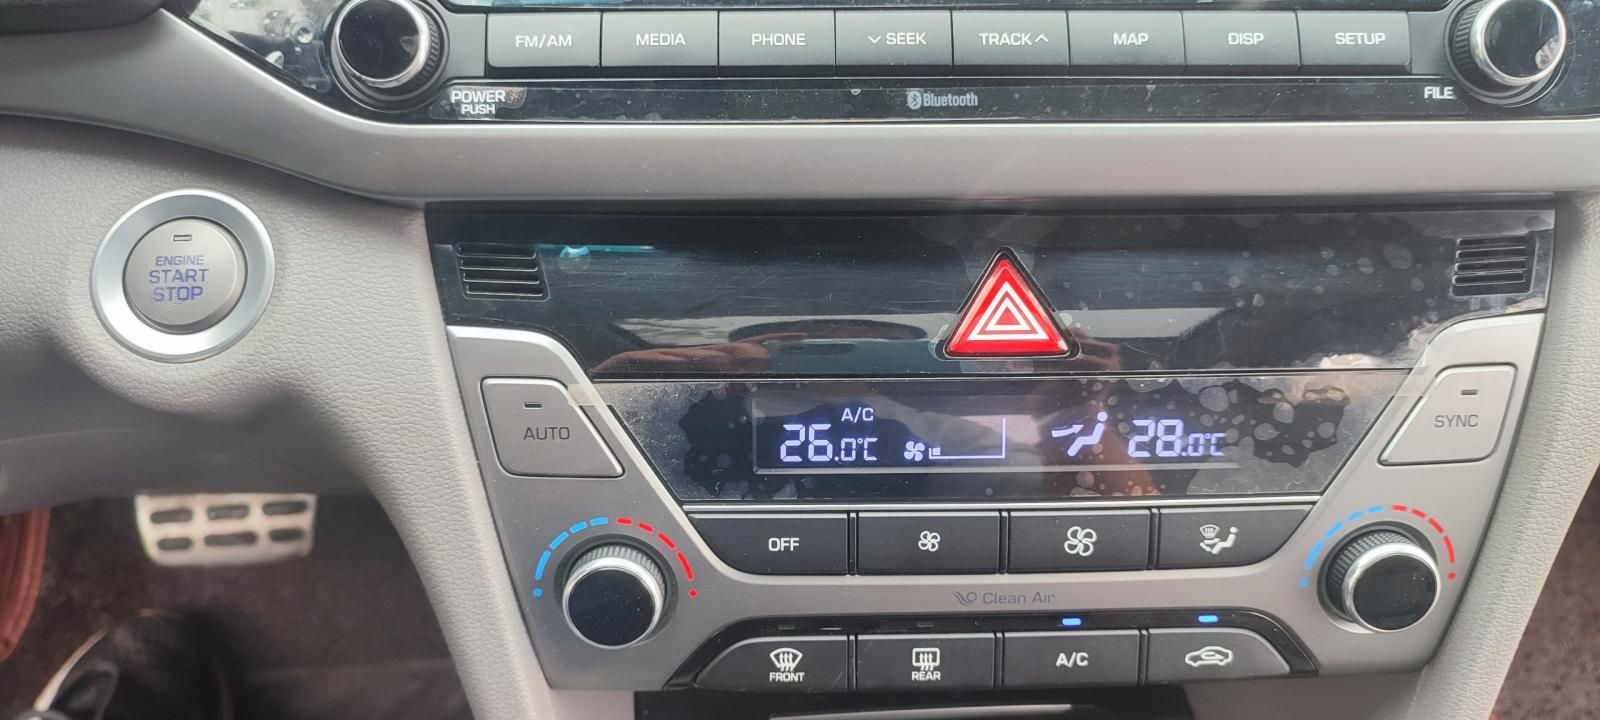 Hyundai Elantra 2017 - 1 chủ, chạy 6,2 vạn km